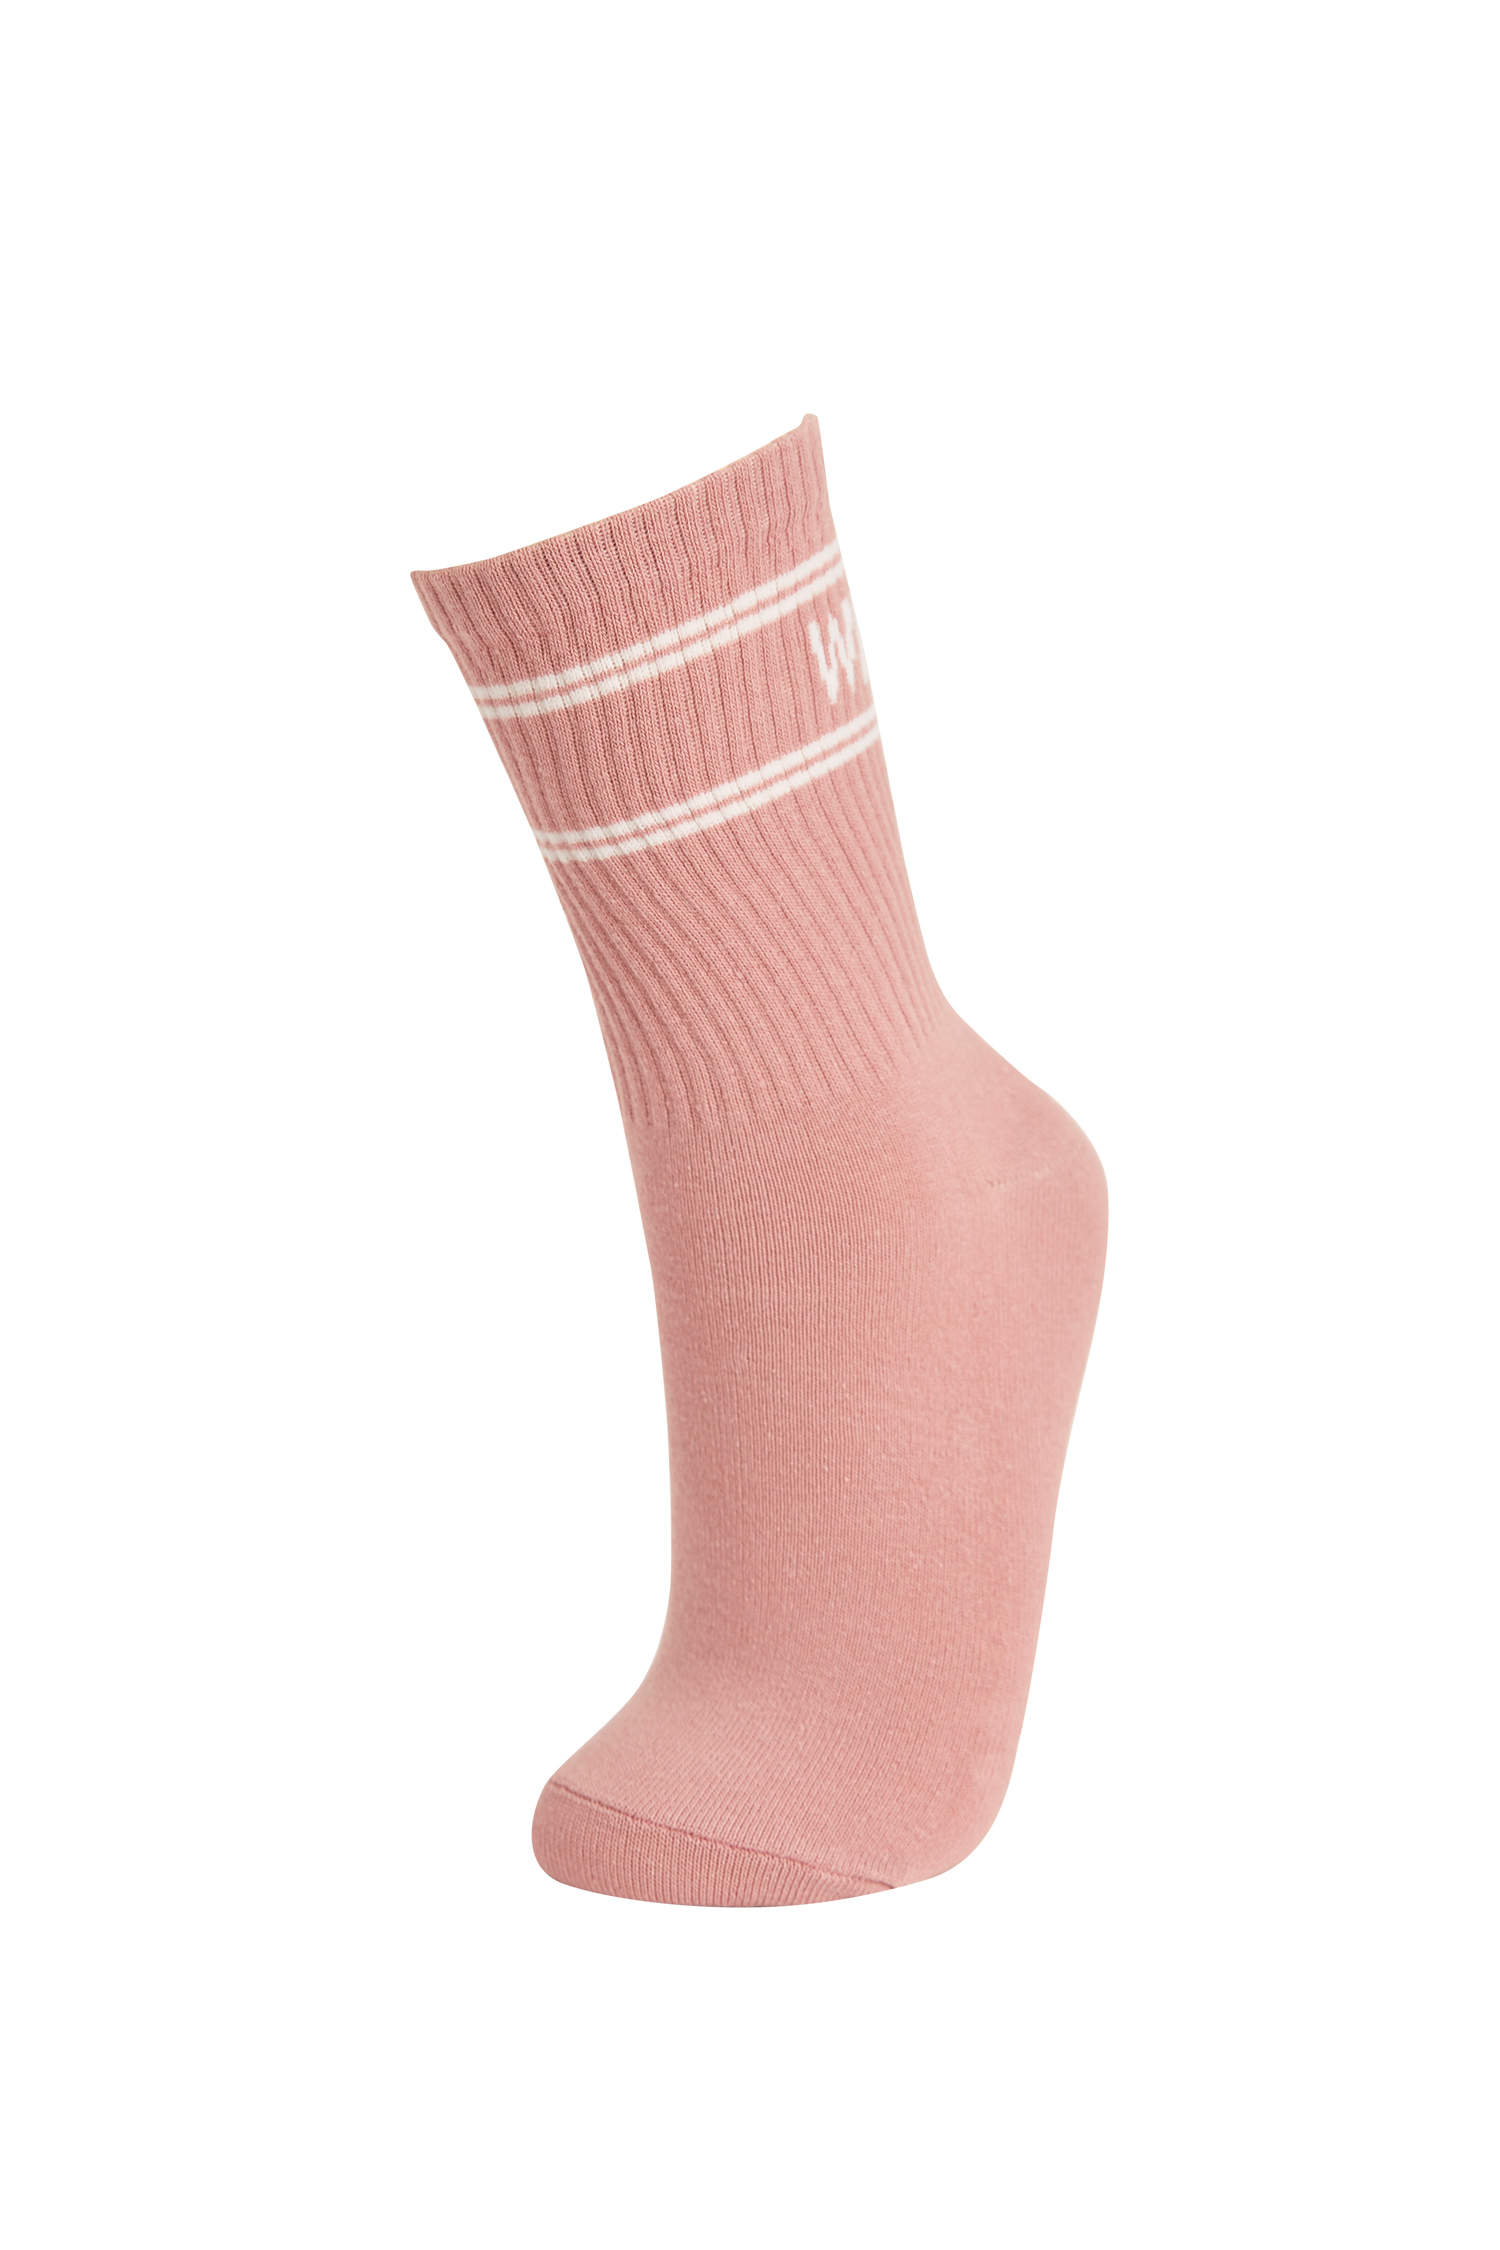 Defacto Kadın Desenli 3'lü Soket Çorap. 3